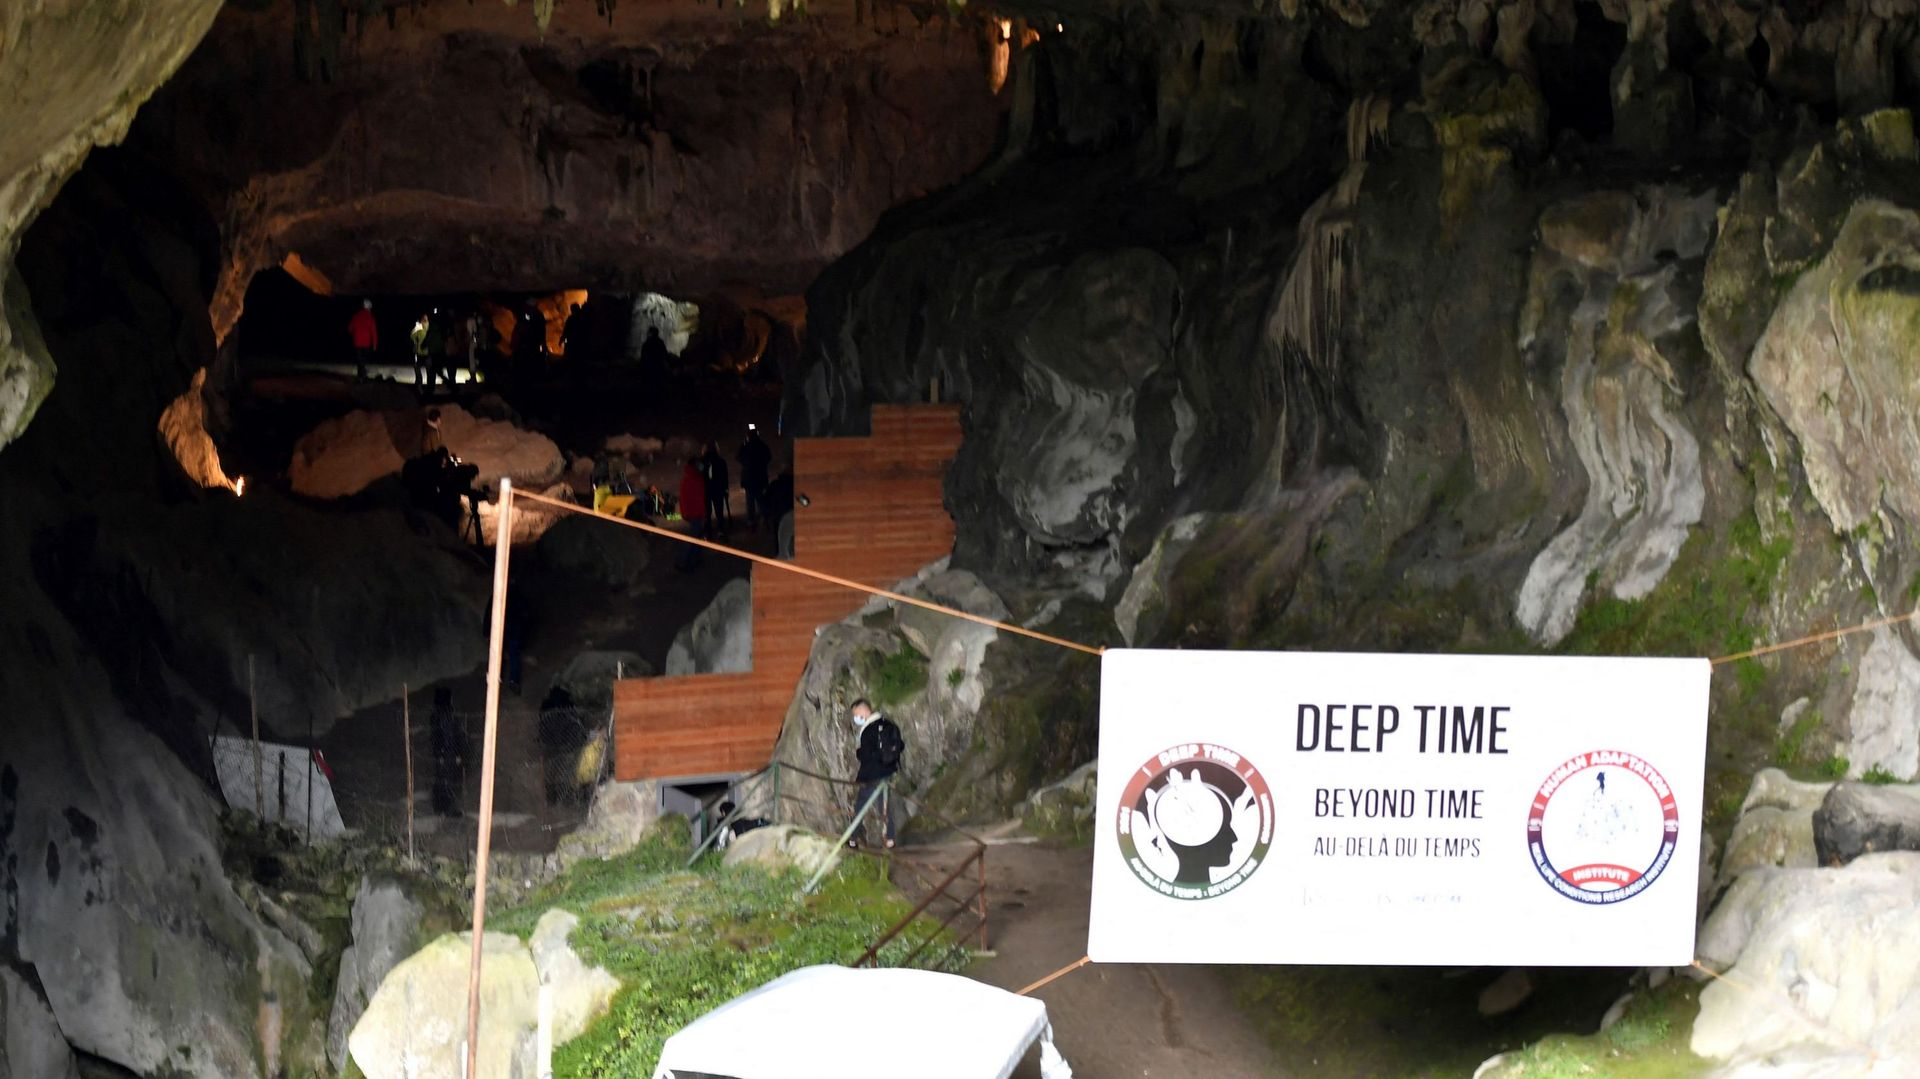 La grotte de Lombrives de l'Ariège (Pyrénées) où séjourne les participants est l'une des plus grandes d'Europe.